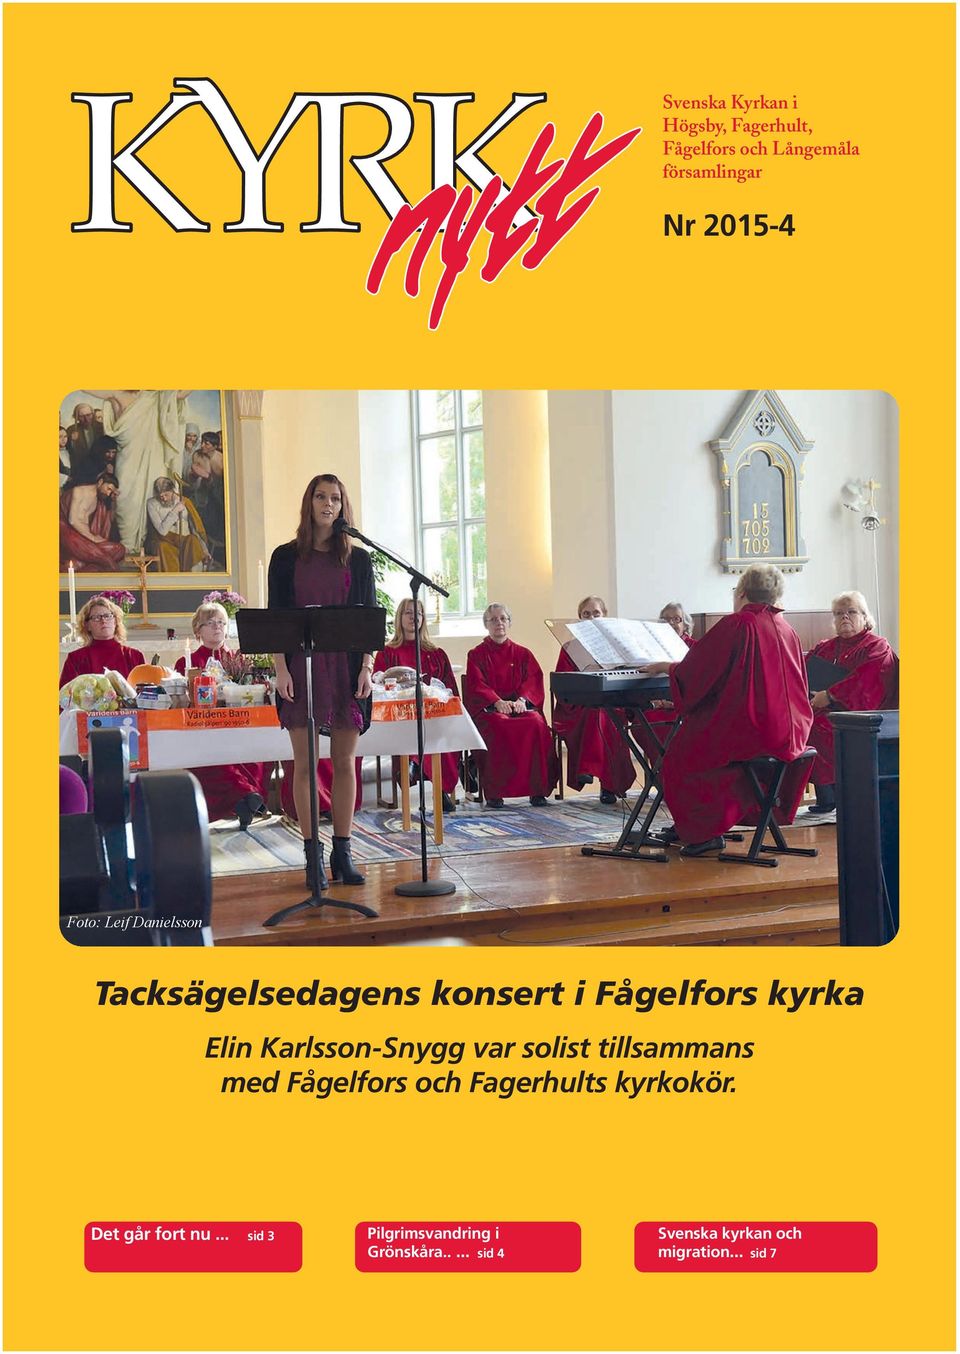 Karlsson-Snygg var solist tillsammans med Fågelfors och Fagerhults kyrkokör.